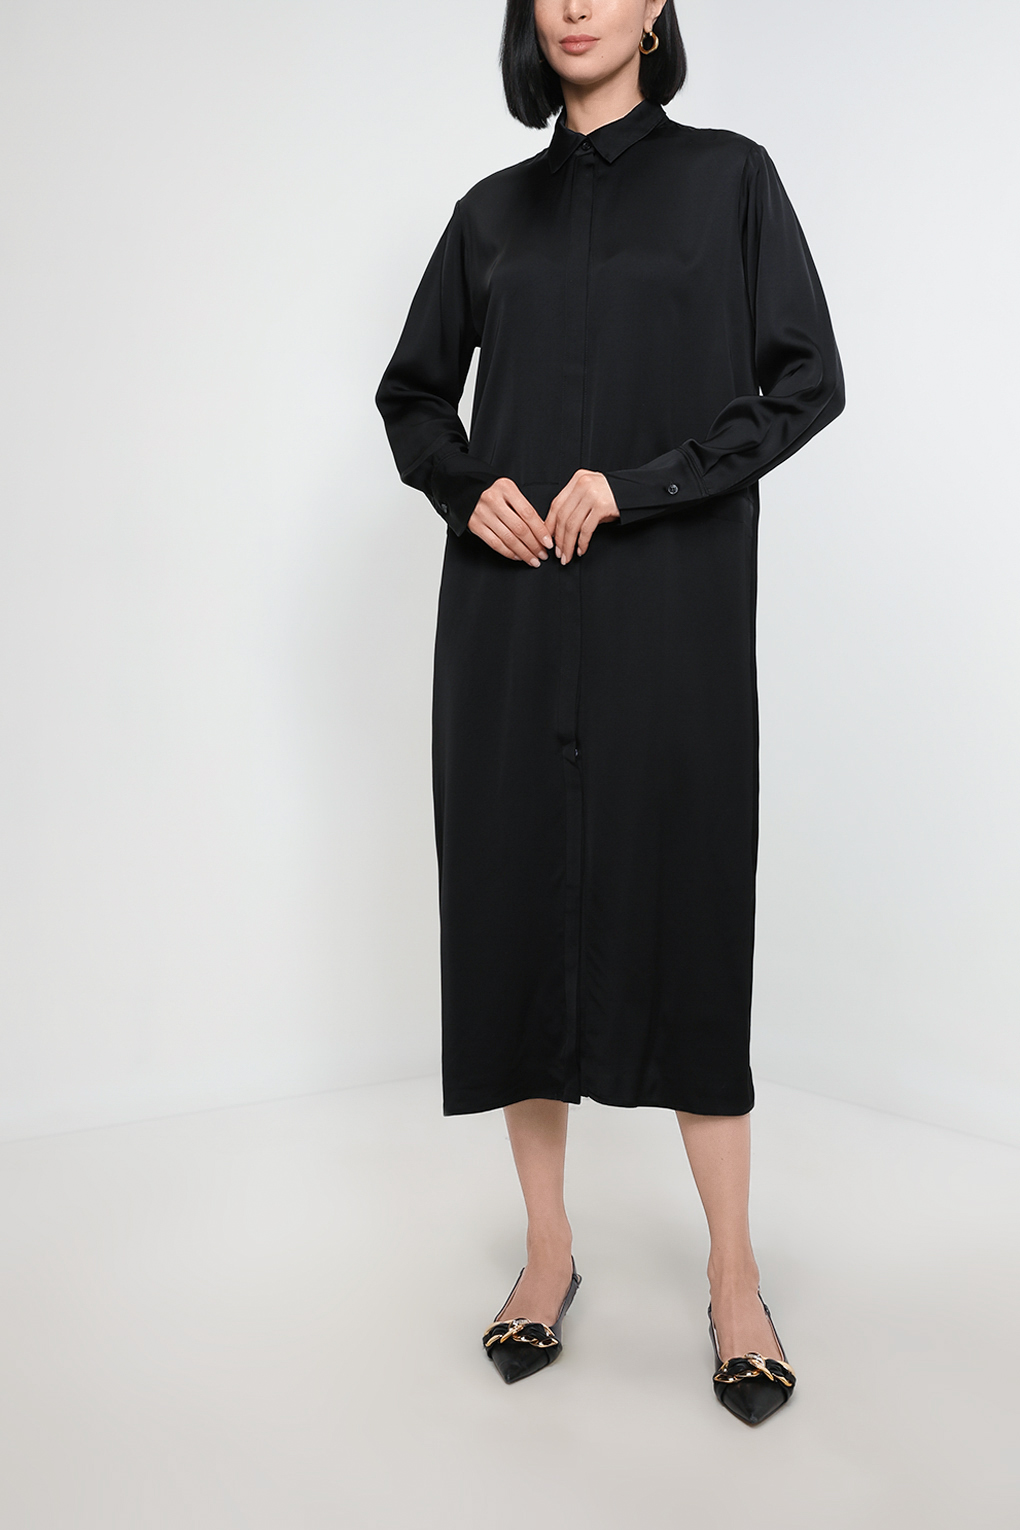 Платье женское SABRINA SCALA SS23015245-001 черное S - купить в Москве, цены на Мегамаркет